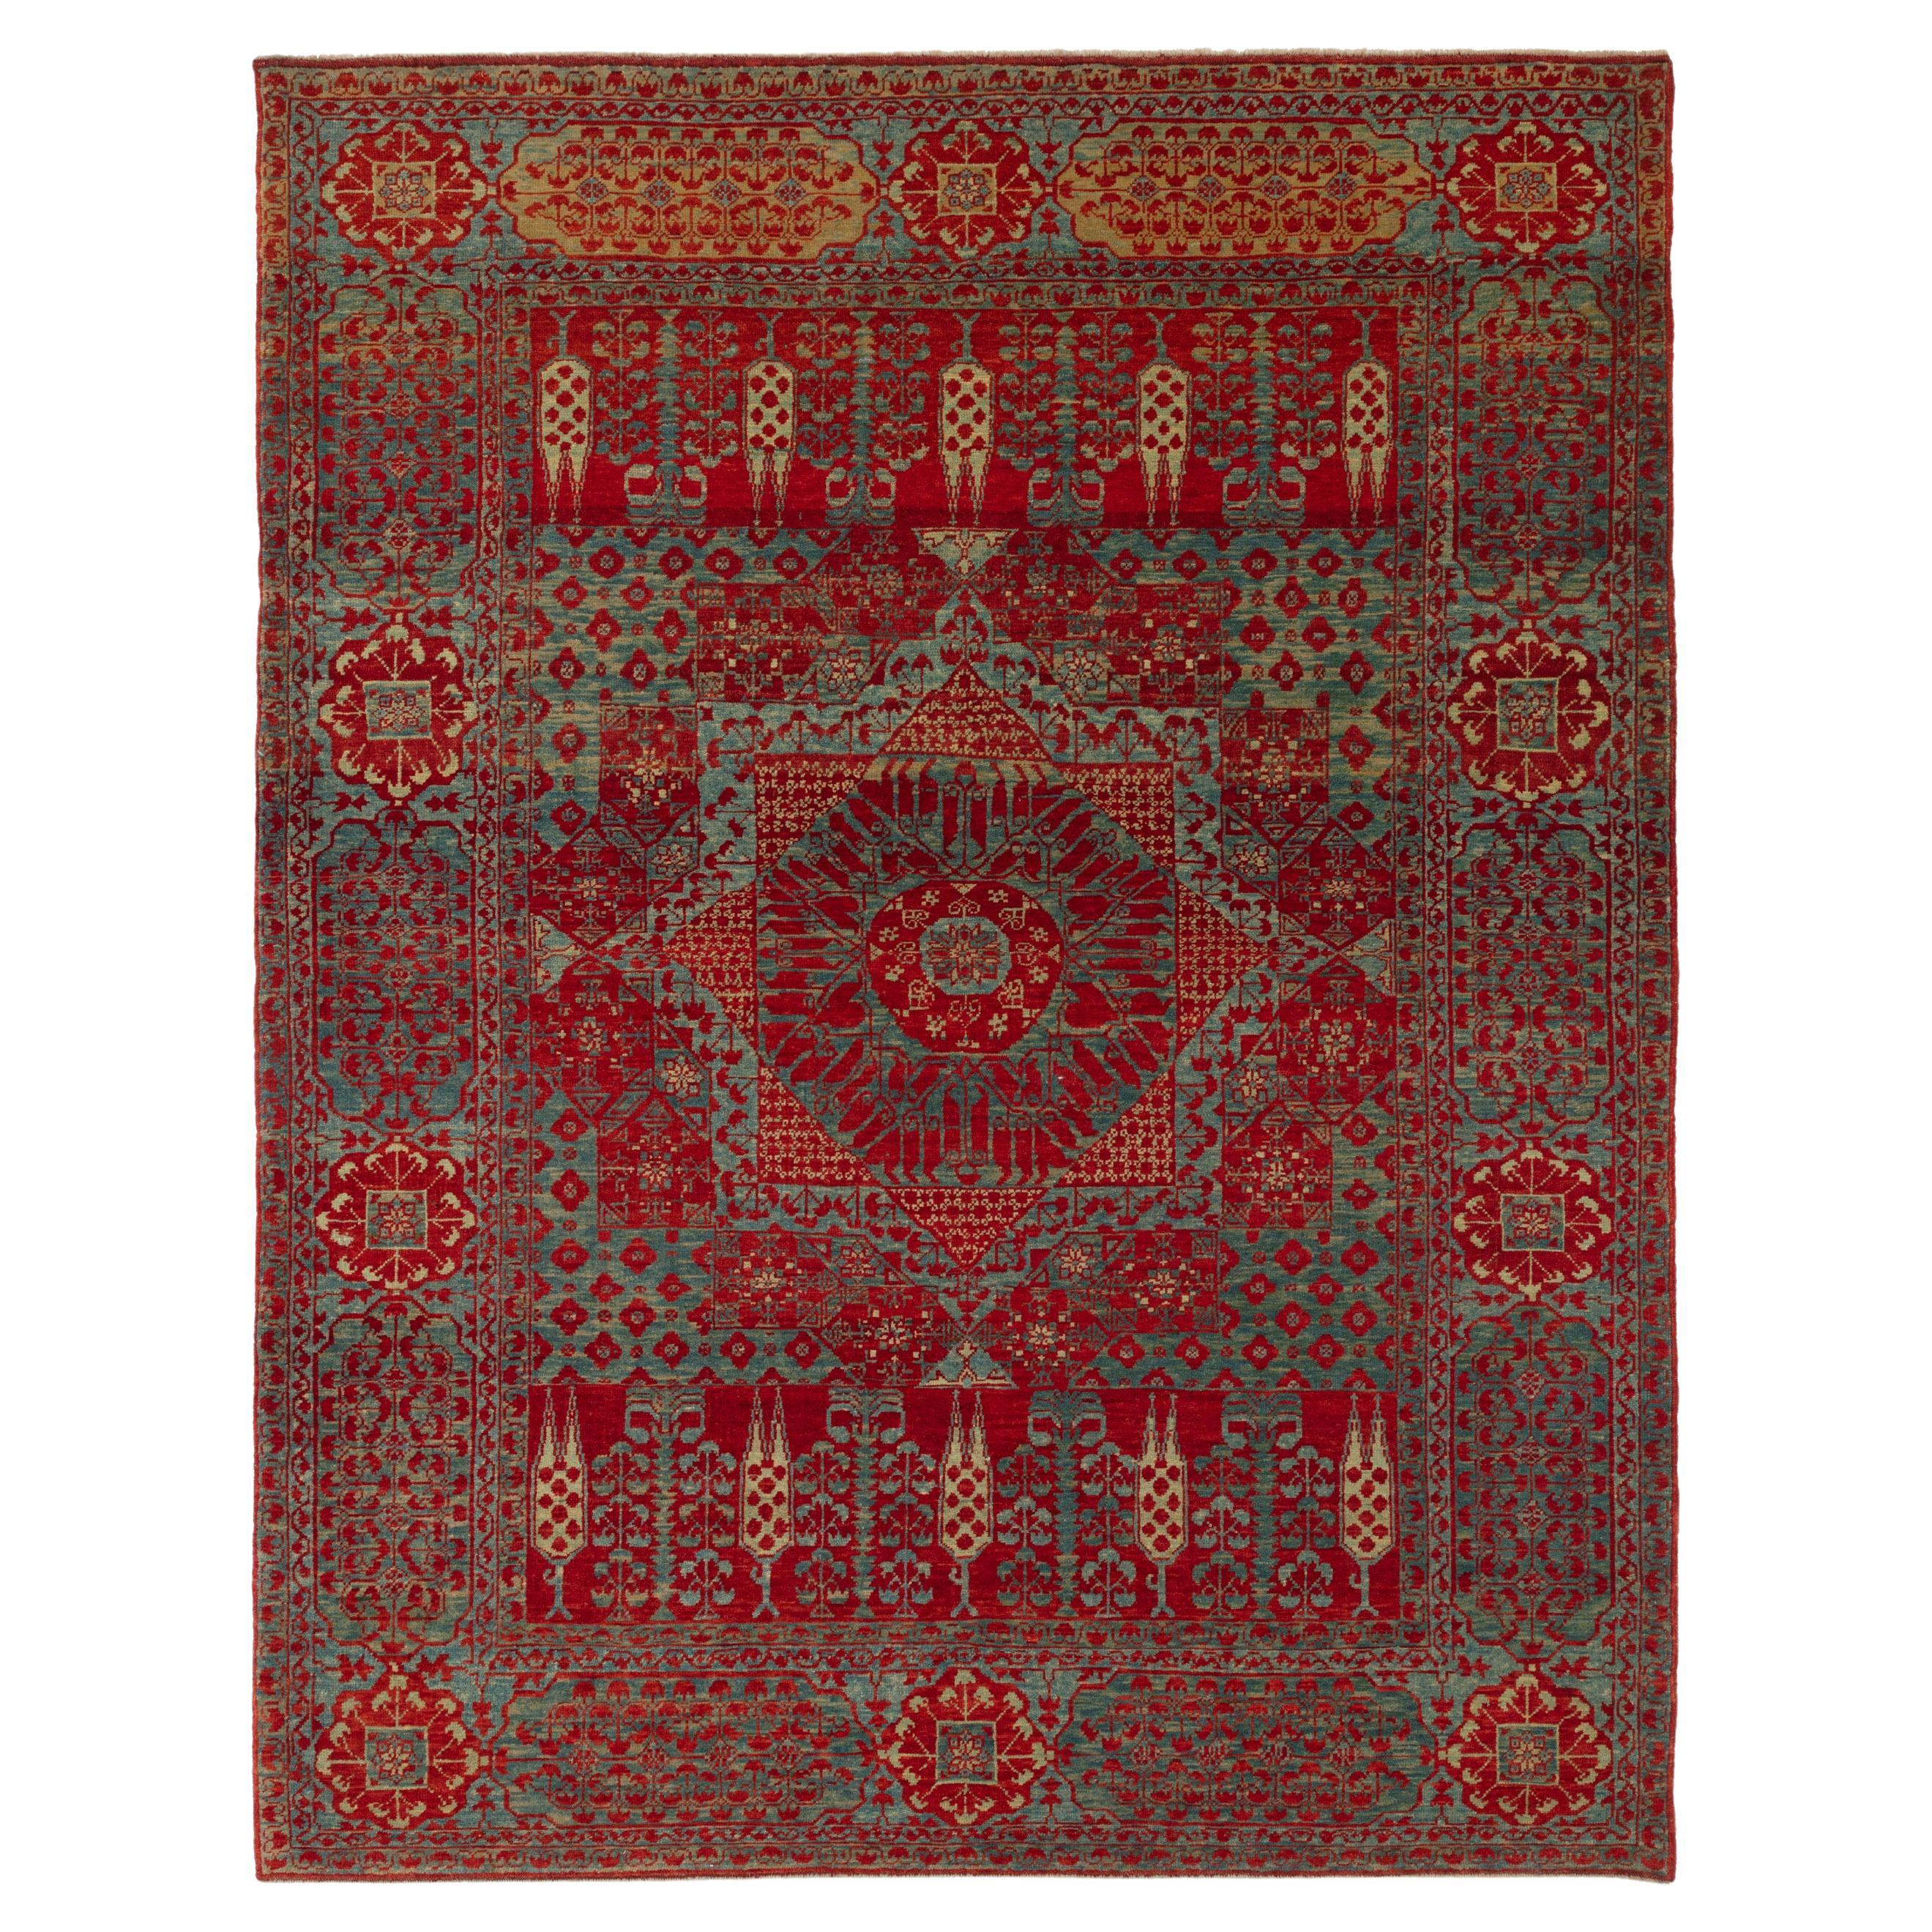 Ararat-Teppich Mamluk mit Palmen und Zypressen Revival-Teppich, Naturfarben